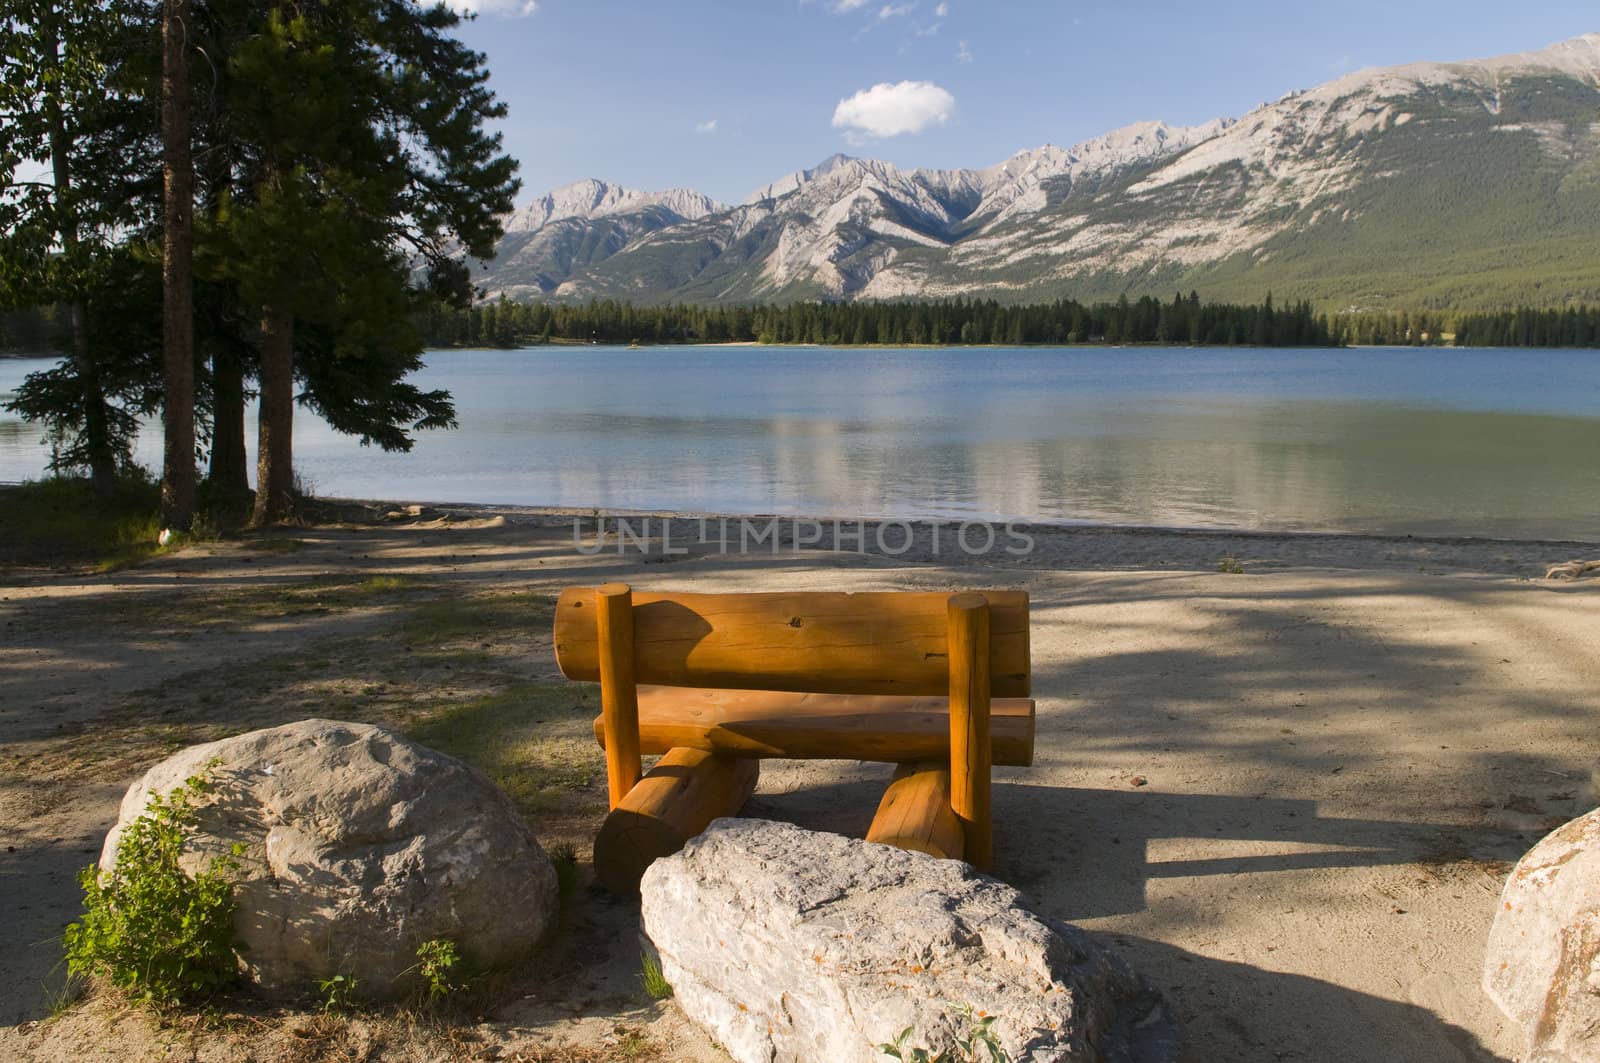 Pine Bench at Lake by Gordo25